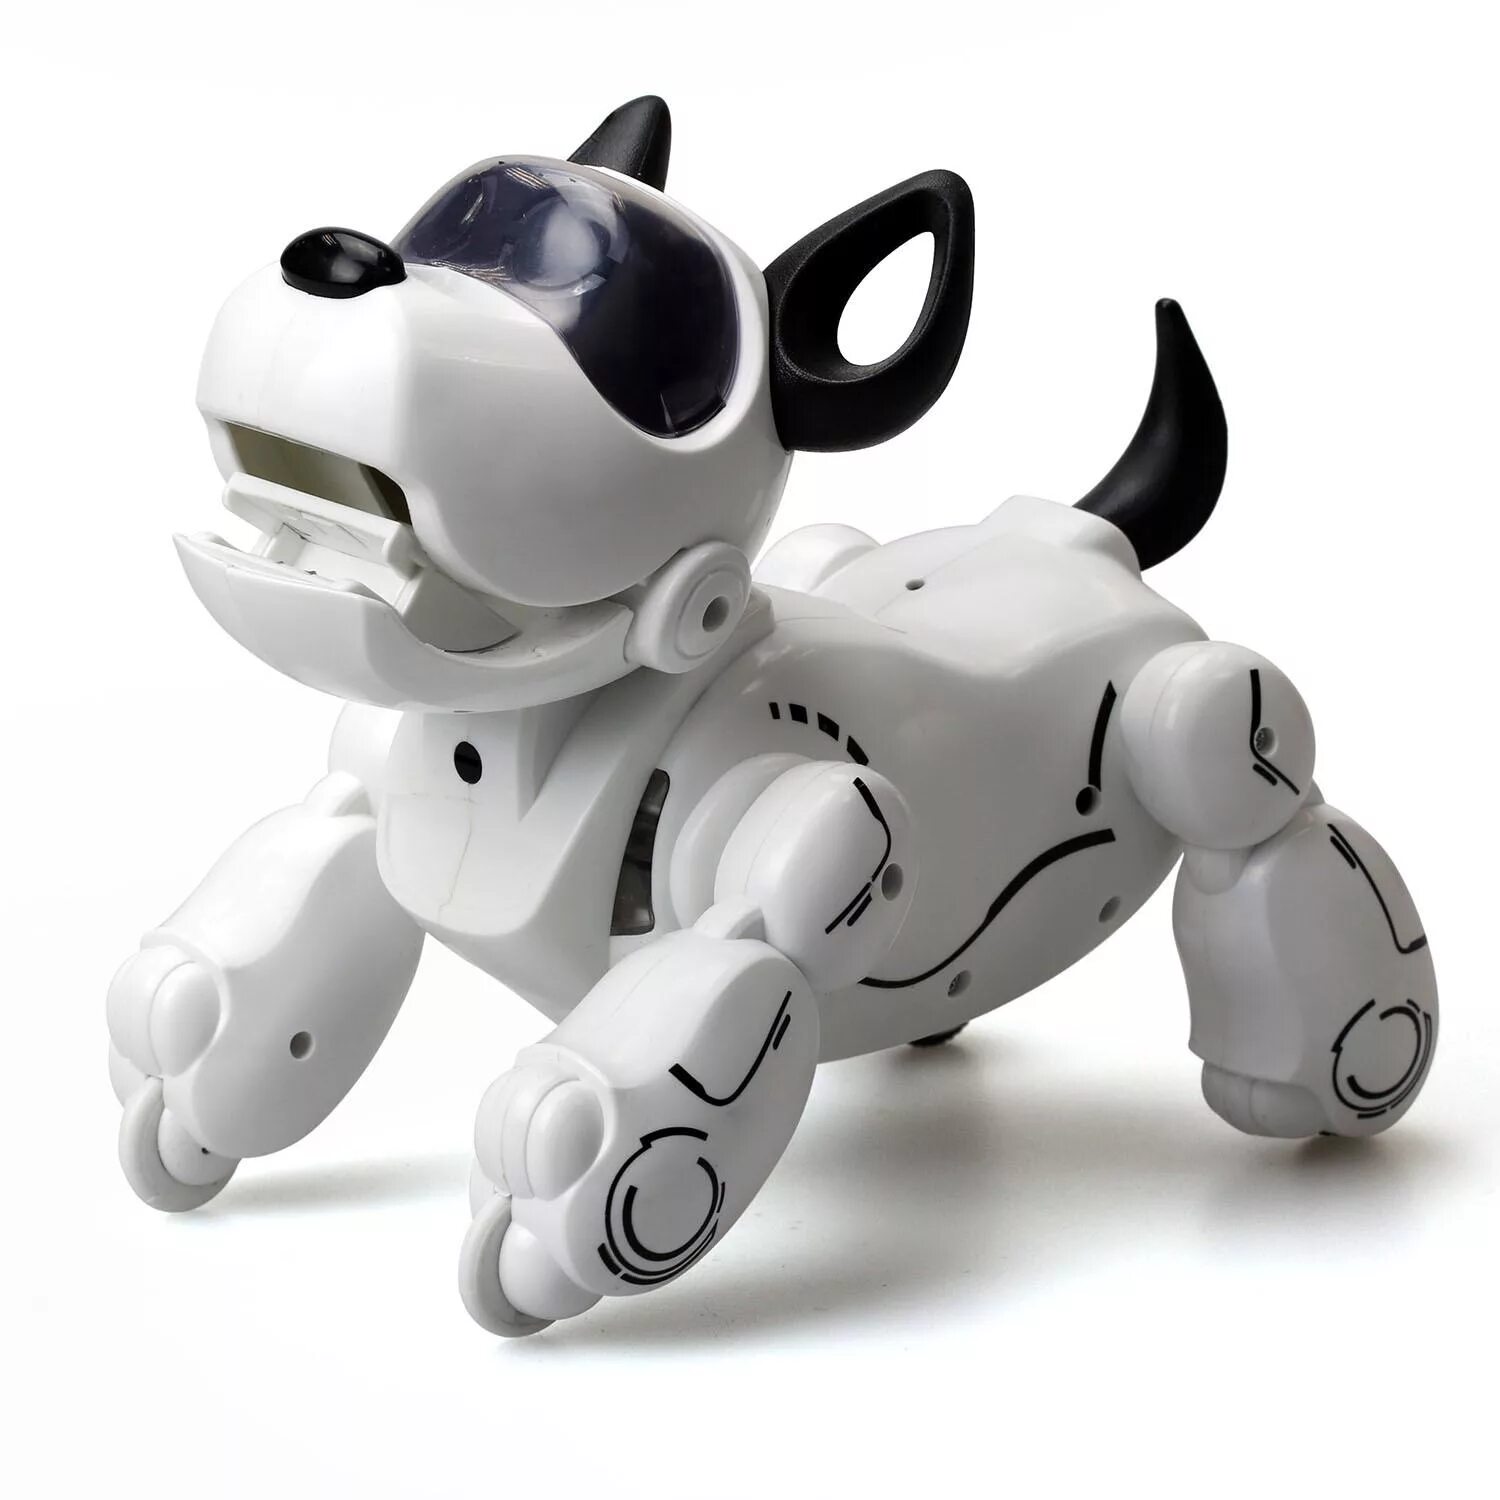 Игрушка Silverlit PUPBO собака. Робот Silverlit собака PUPBO. Робот Silverlit собака Дюк. Собака робот Silverlit PUPBO 88520.